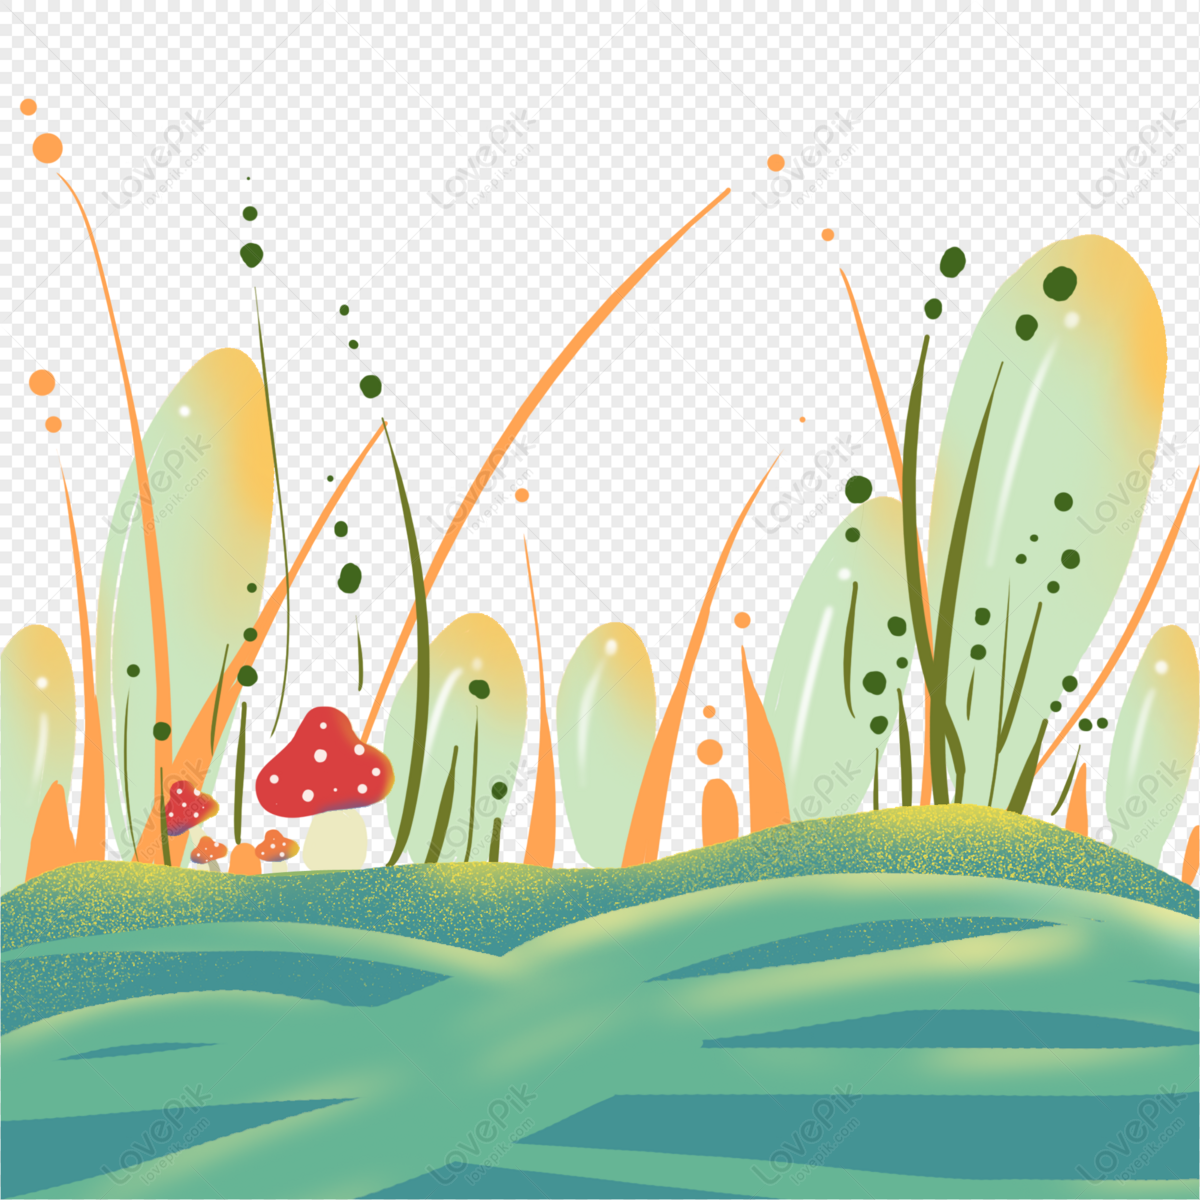 Desenho De Cogumelo Desenhado à Mão PNG , Cogumelo, Desenho Animado, Pintado  à Mão Imagem PNG e PSD Para Download Gratuito